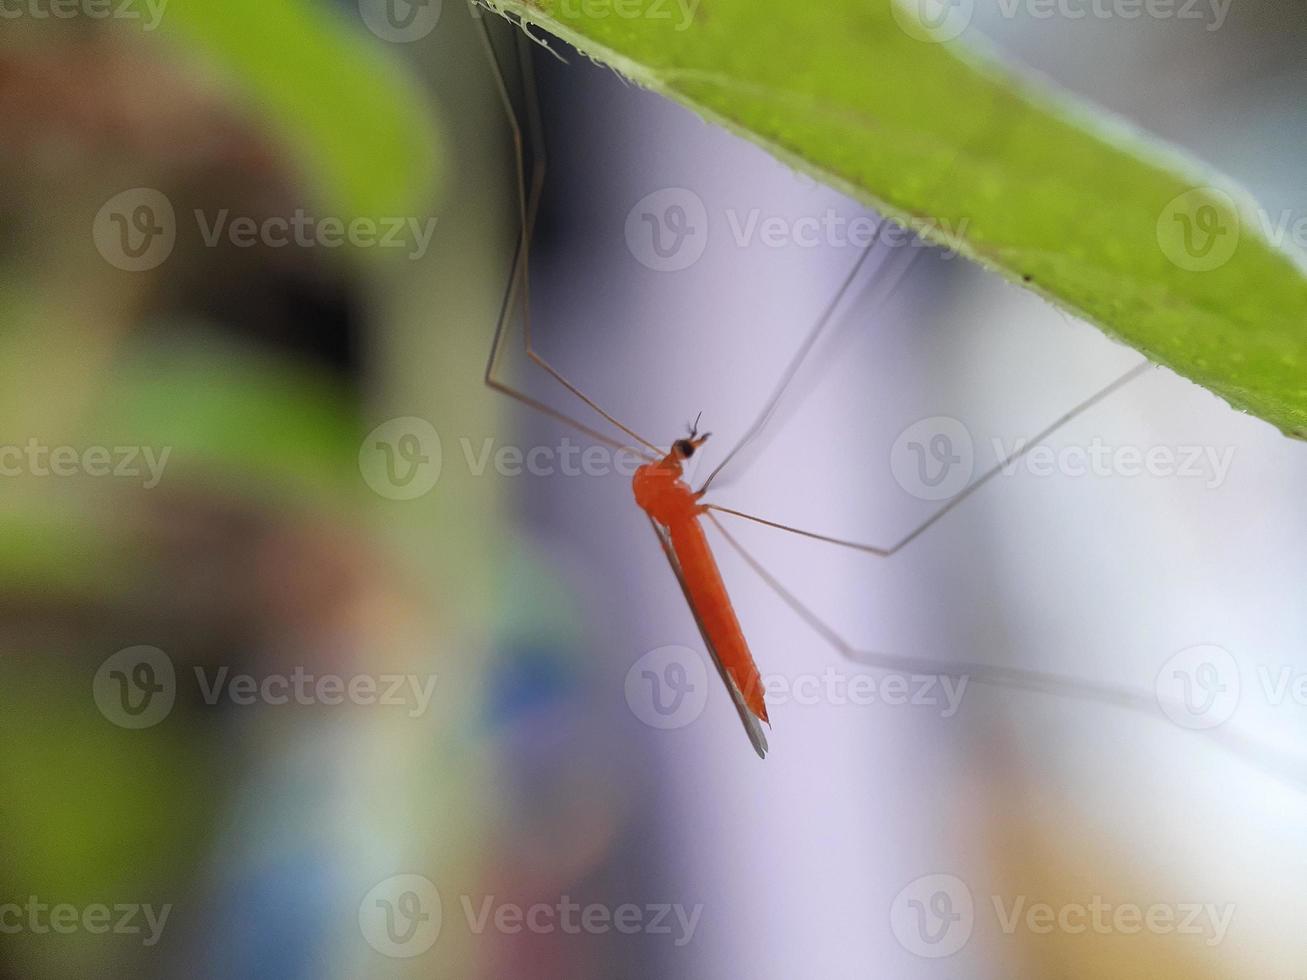 närbild av röd mygga på gräs blad foto